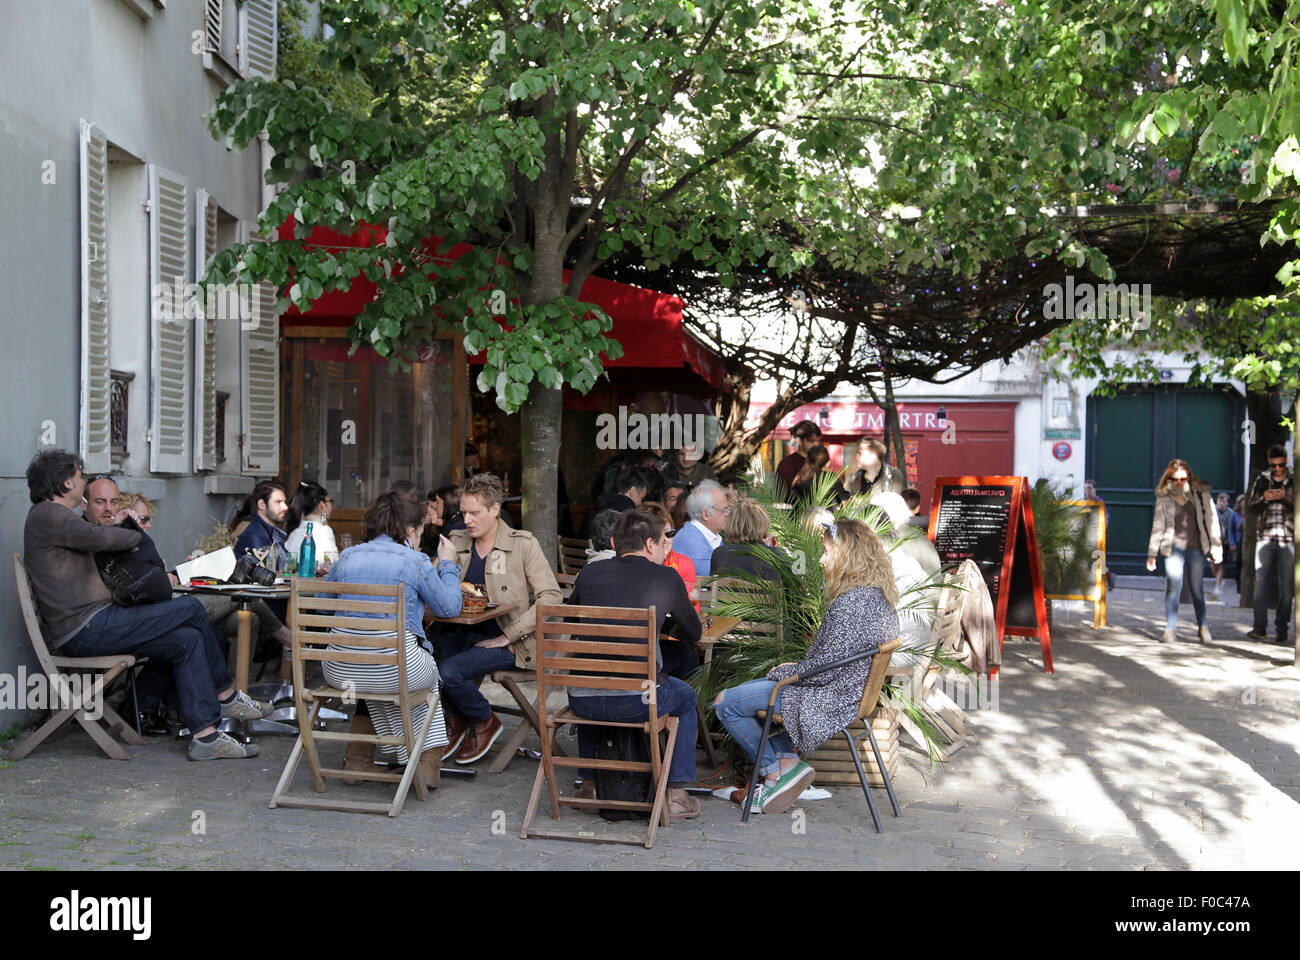 Restaurant Chez Plumeau in Paris at the Place du Calvaire,Montmartre,near the Sacre Coeur.France Stock Photo